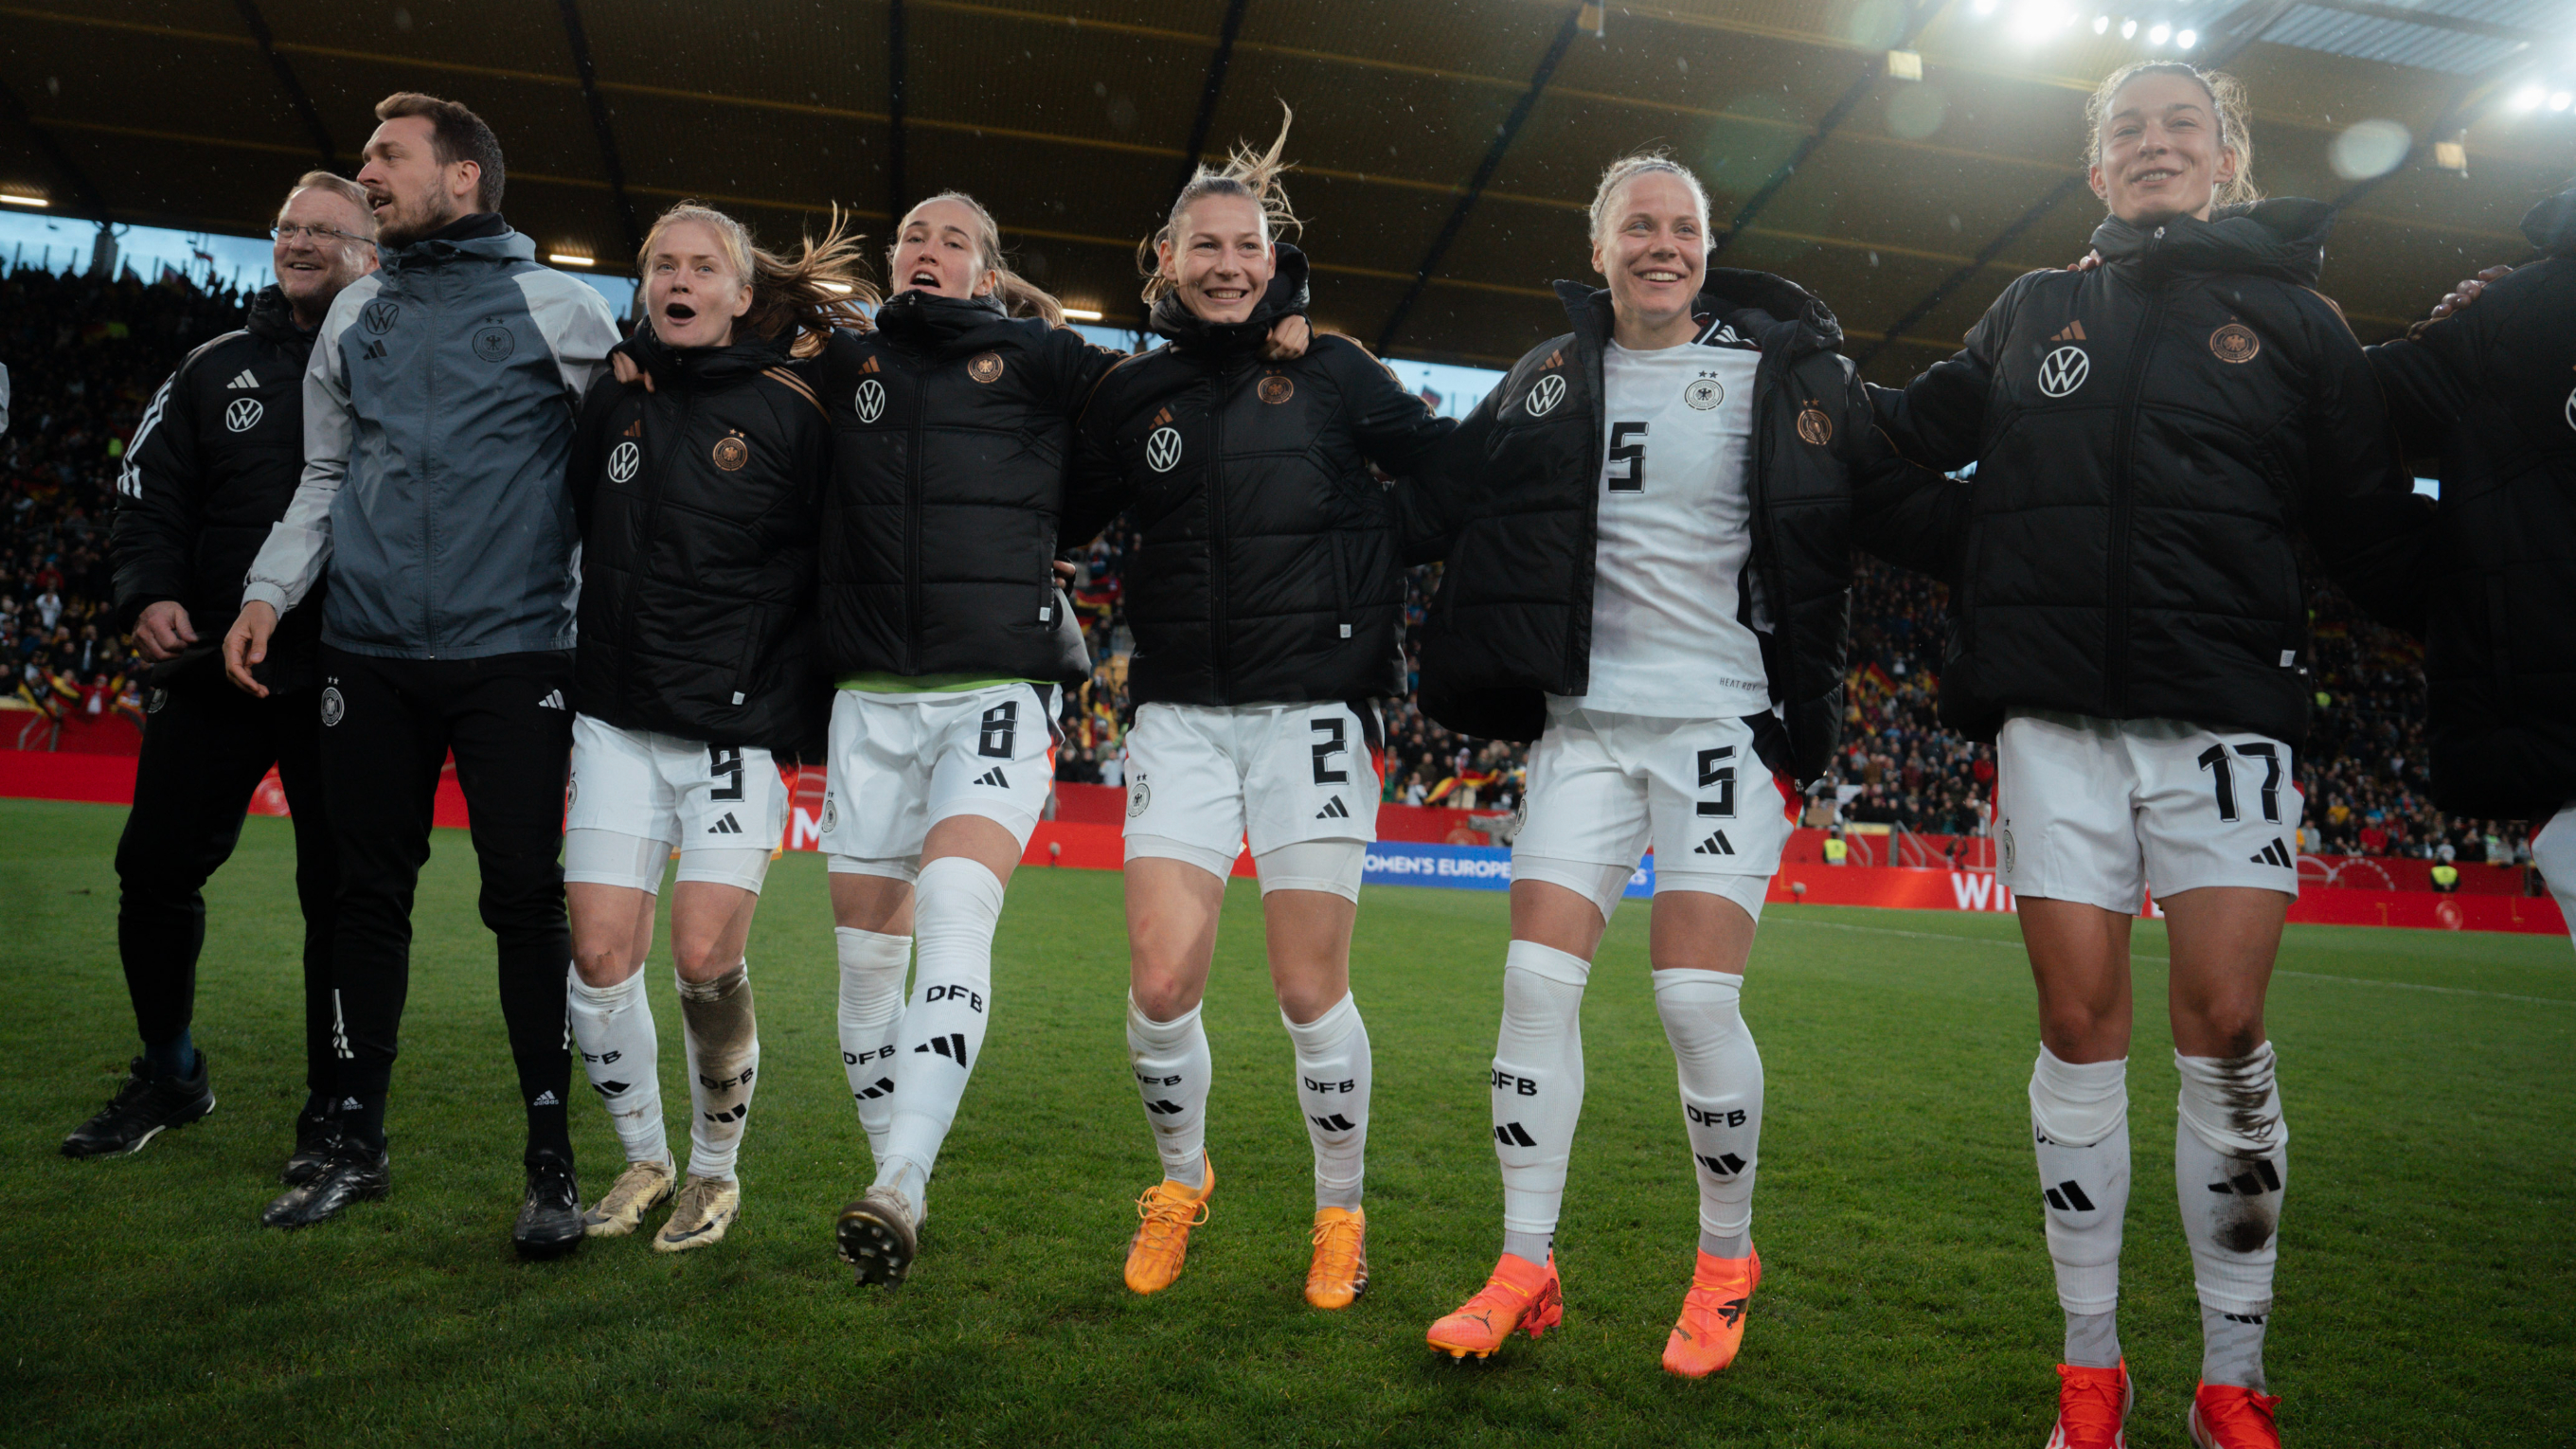 Wolter (2.v.r.) nach dem Länderspiel gegen Island: "Das war sehr, sehr schön" © Sofieke van Bilsen/DFB